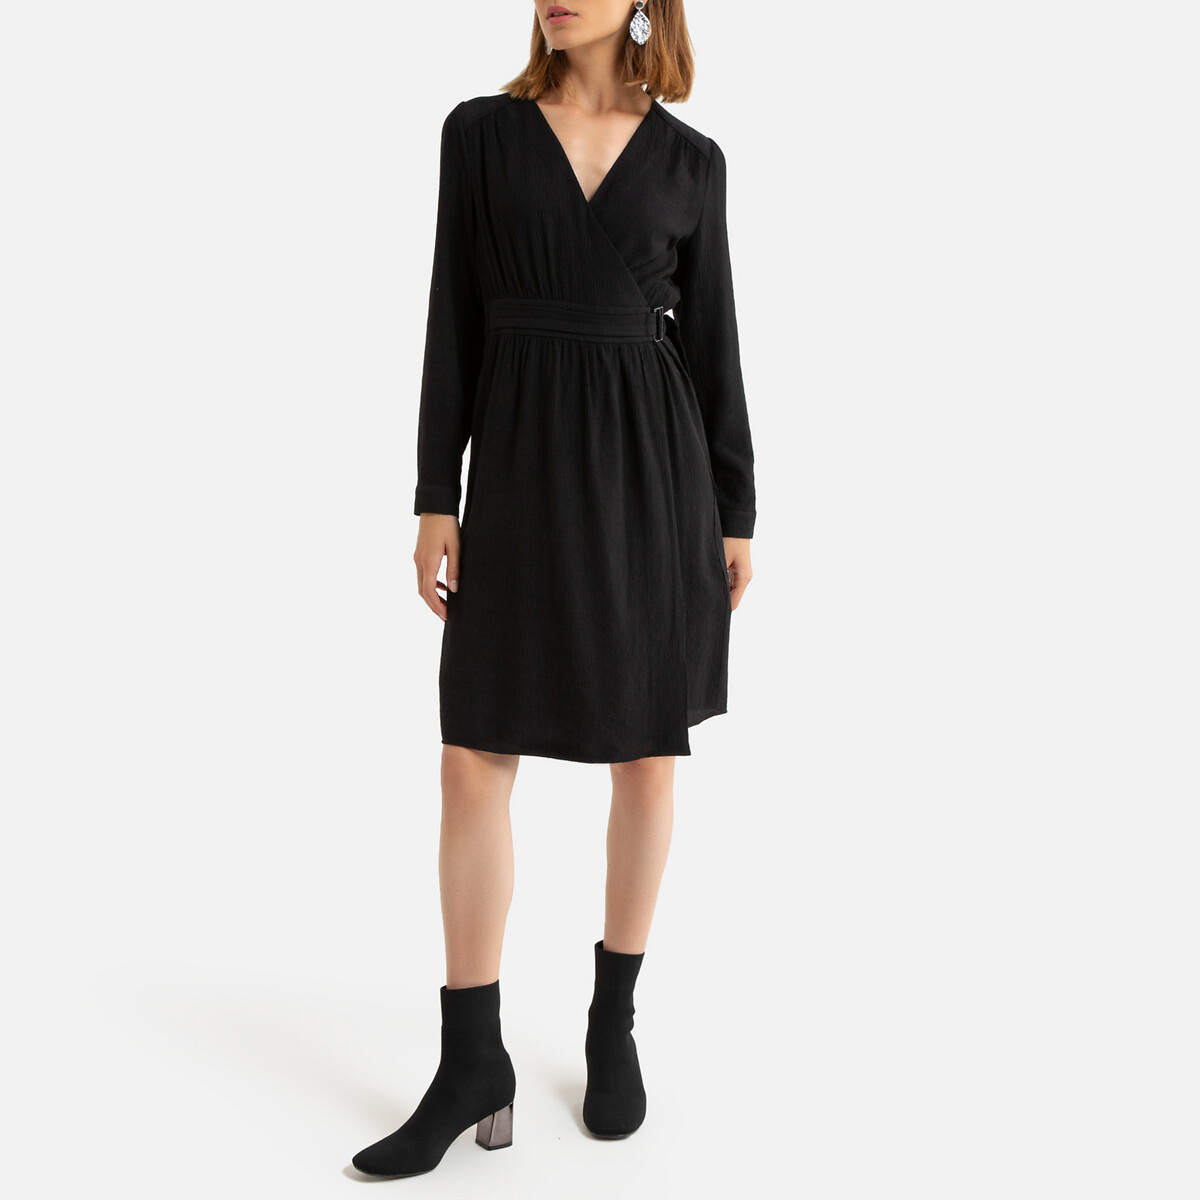 Платье La Redoute С запахом короткое длинные рукава 0(XS) черный, размер 0(XS) С запахом короткое длинные рукава 0(XS) черный - фото 2